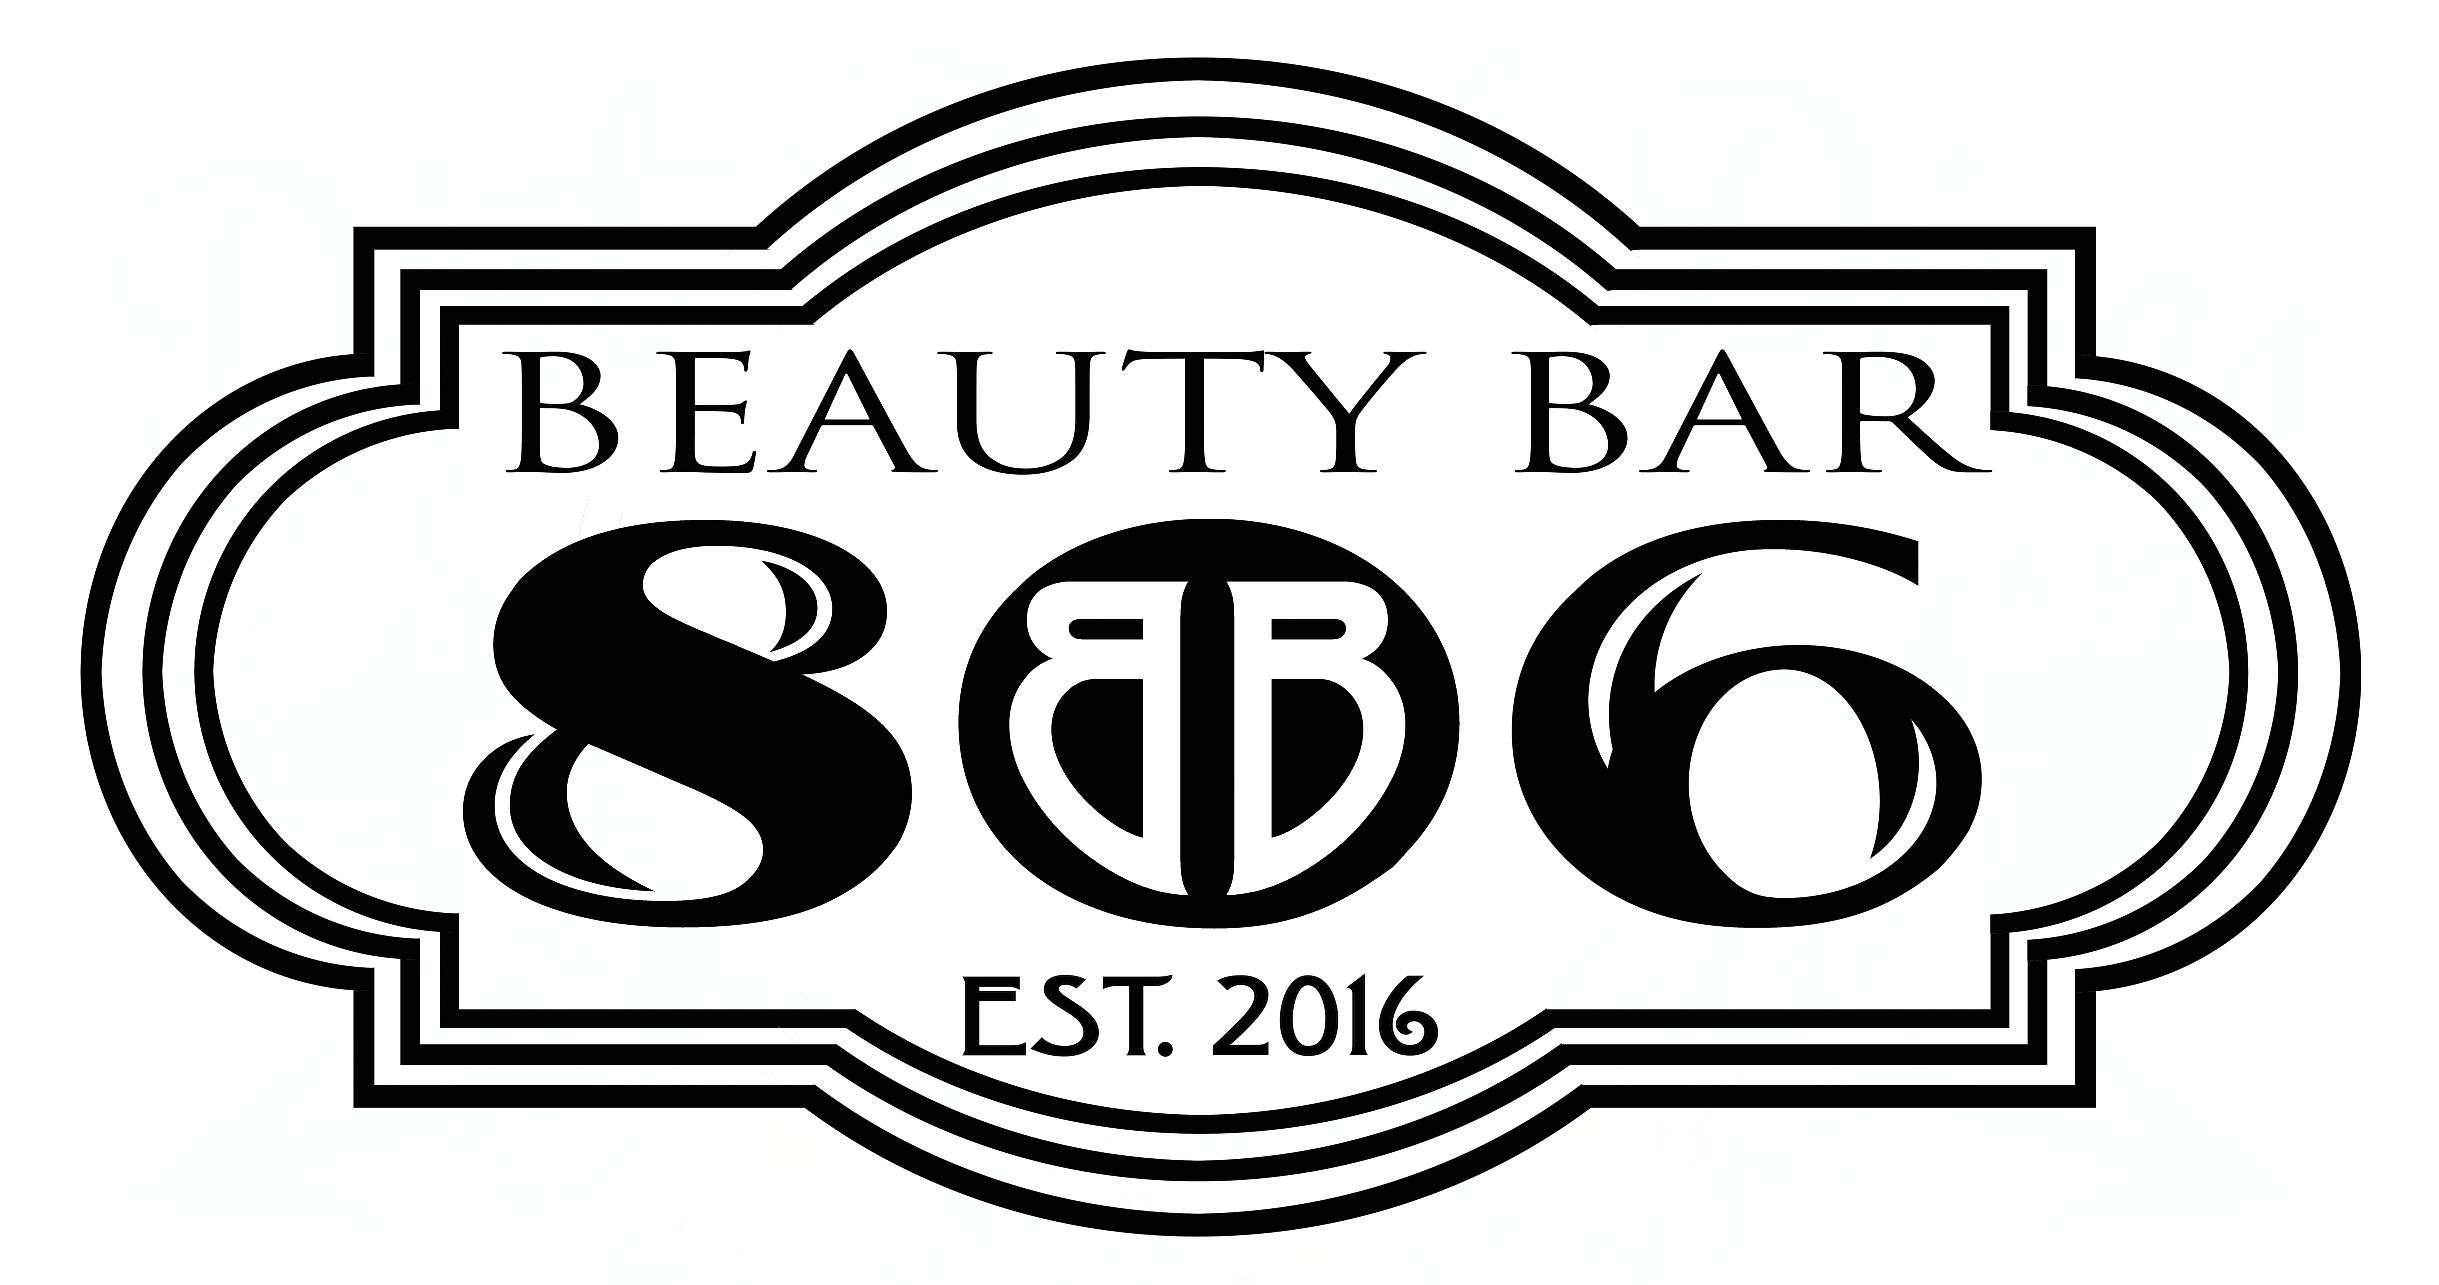 Beauty Bar 806